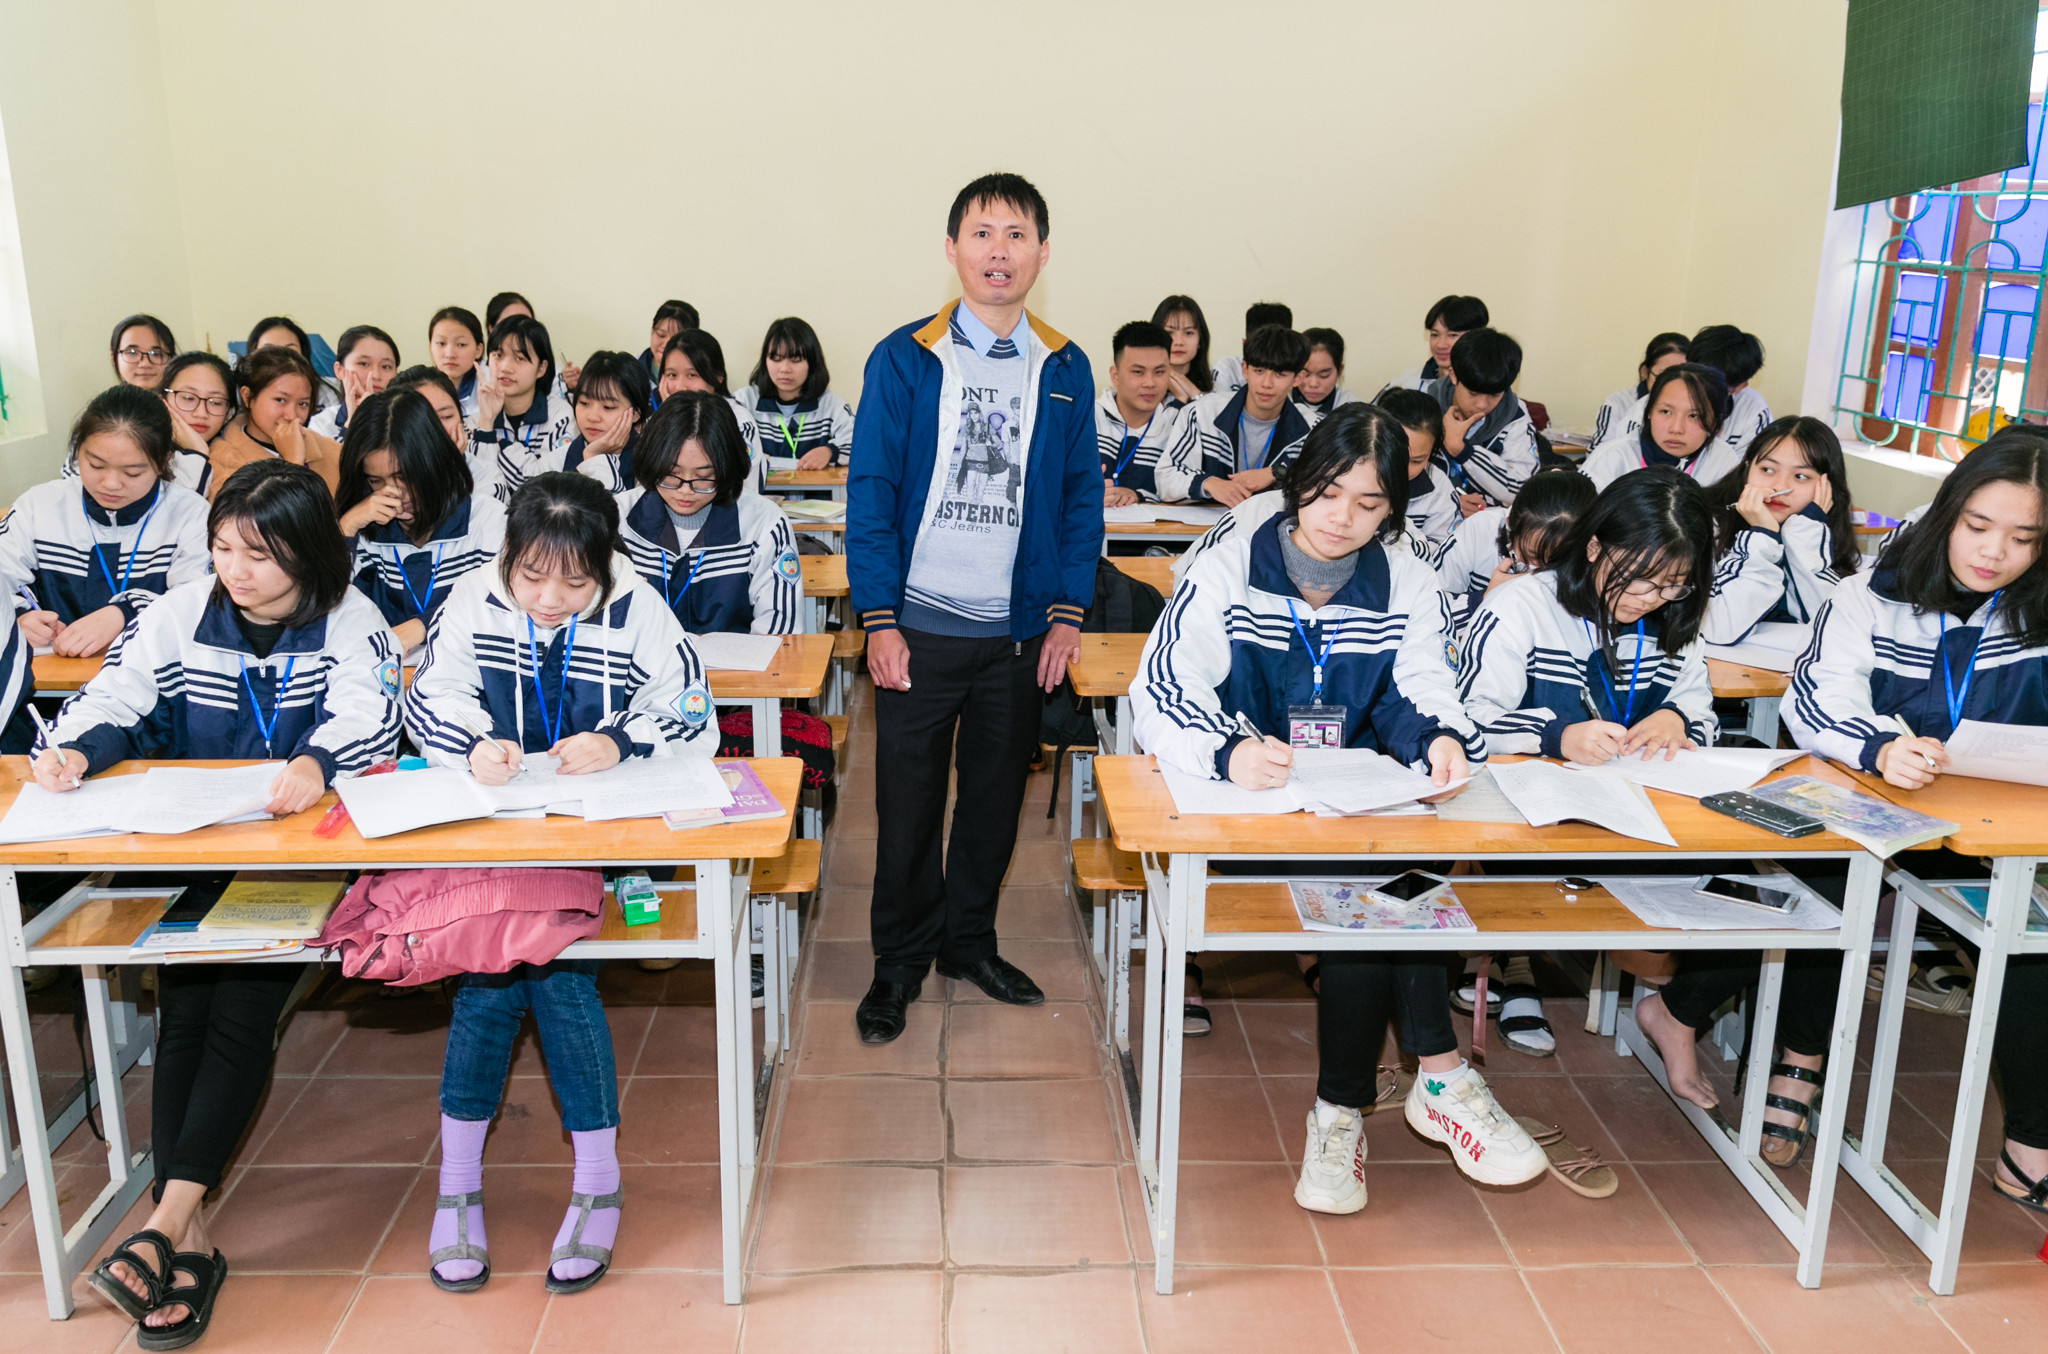 Thầy giáo Nguyễn Đậu Nghĩa là thầy giáo dạy Giáo dục công dân nhưng rất có duyên khi 4 lần hướng dẫn học sinh đạt giải tại các cuộc thi. Ảnh: Đức Anh